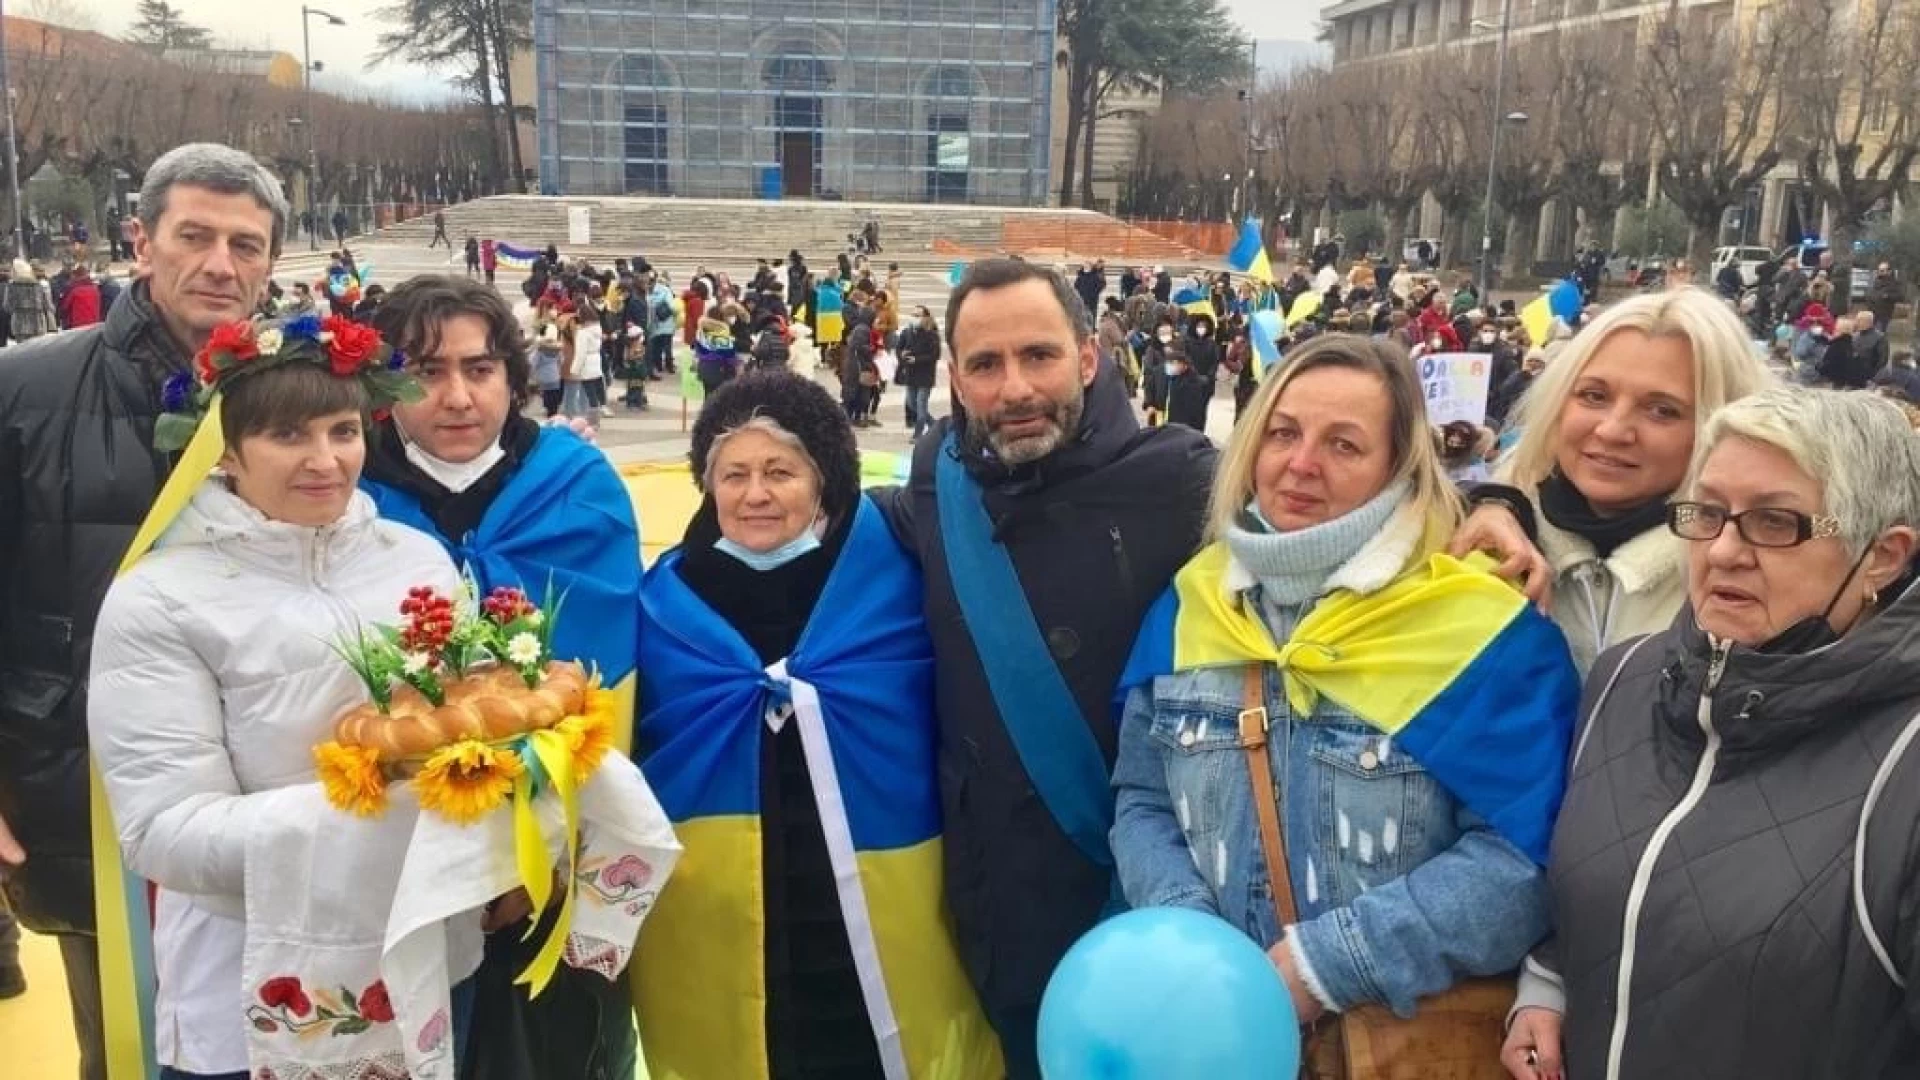 Avezzano: alla manifestazione per la pace e per lo stop della Guerra in Ucraina anche una delegazione del Consiglio Provinciale dell’Aquila.